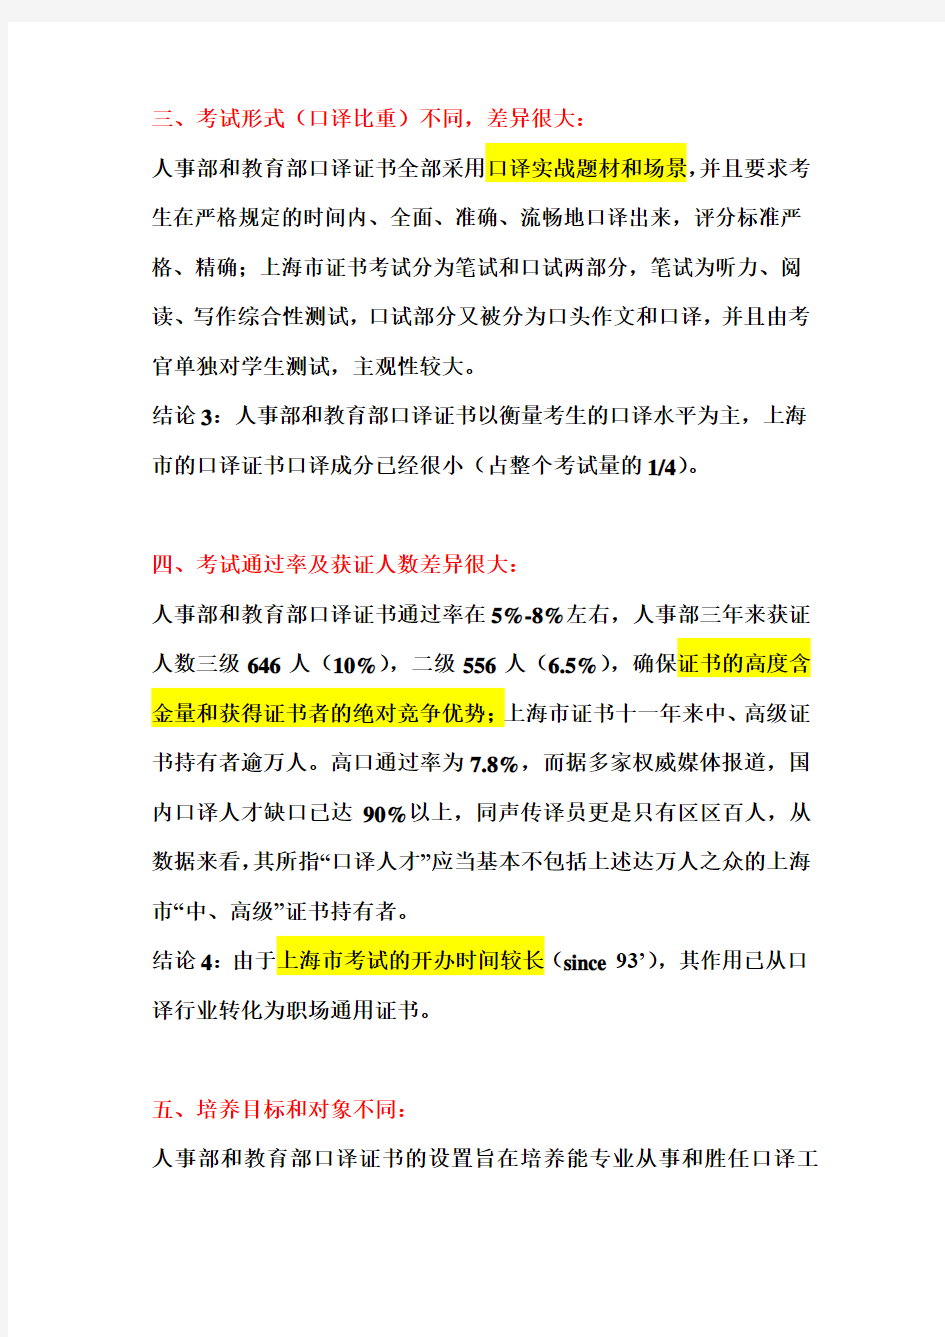 人事部、教育部和上海市口译证书比较